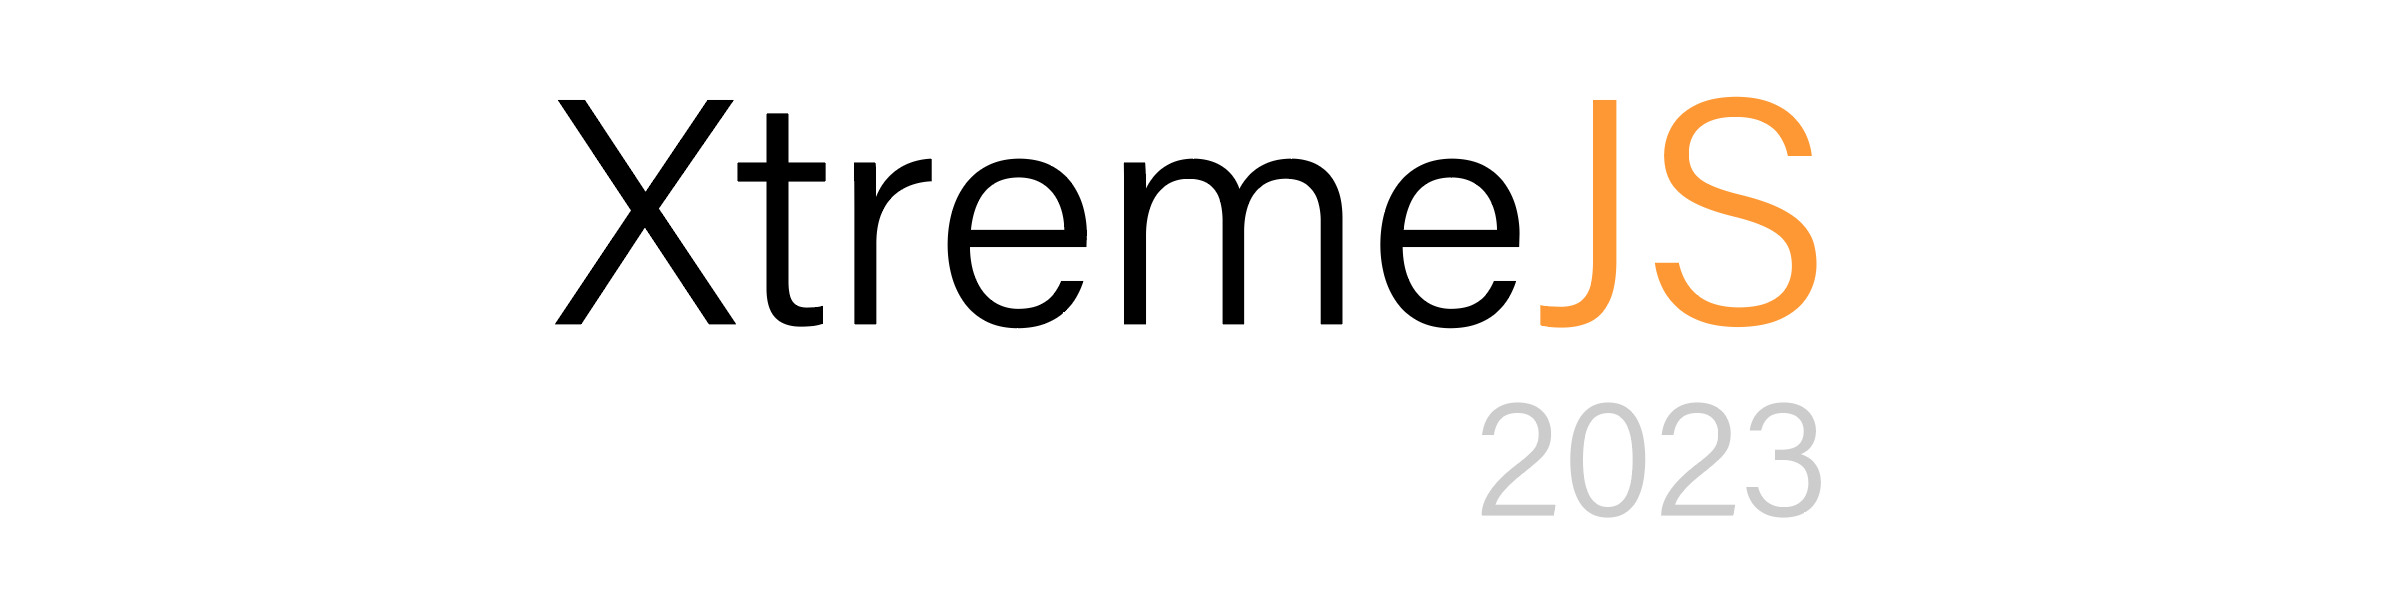 XtremeJS 2023 logo